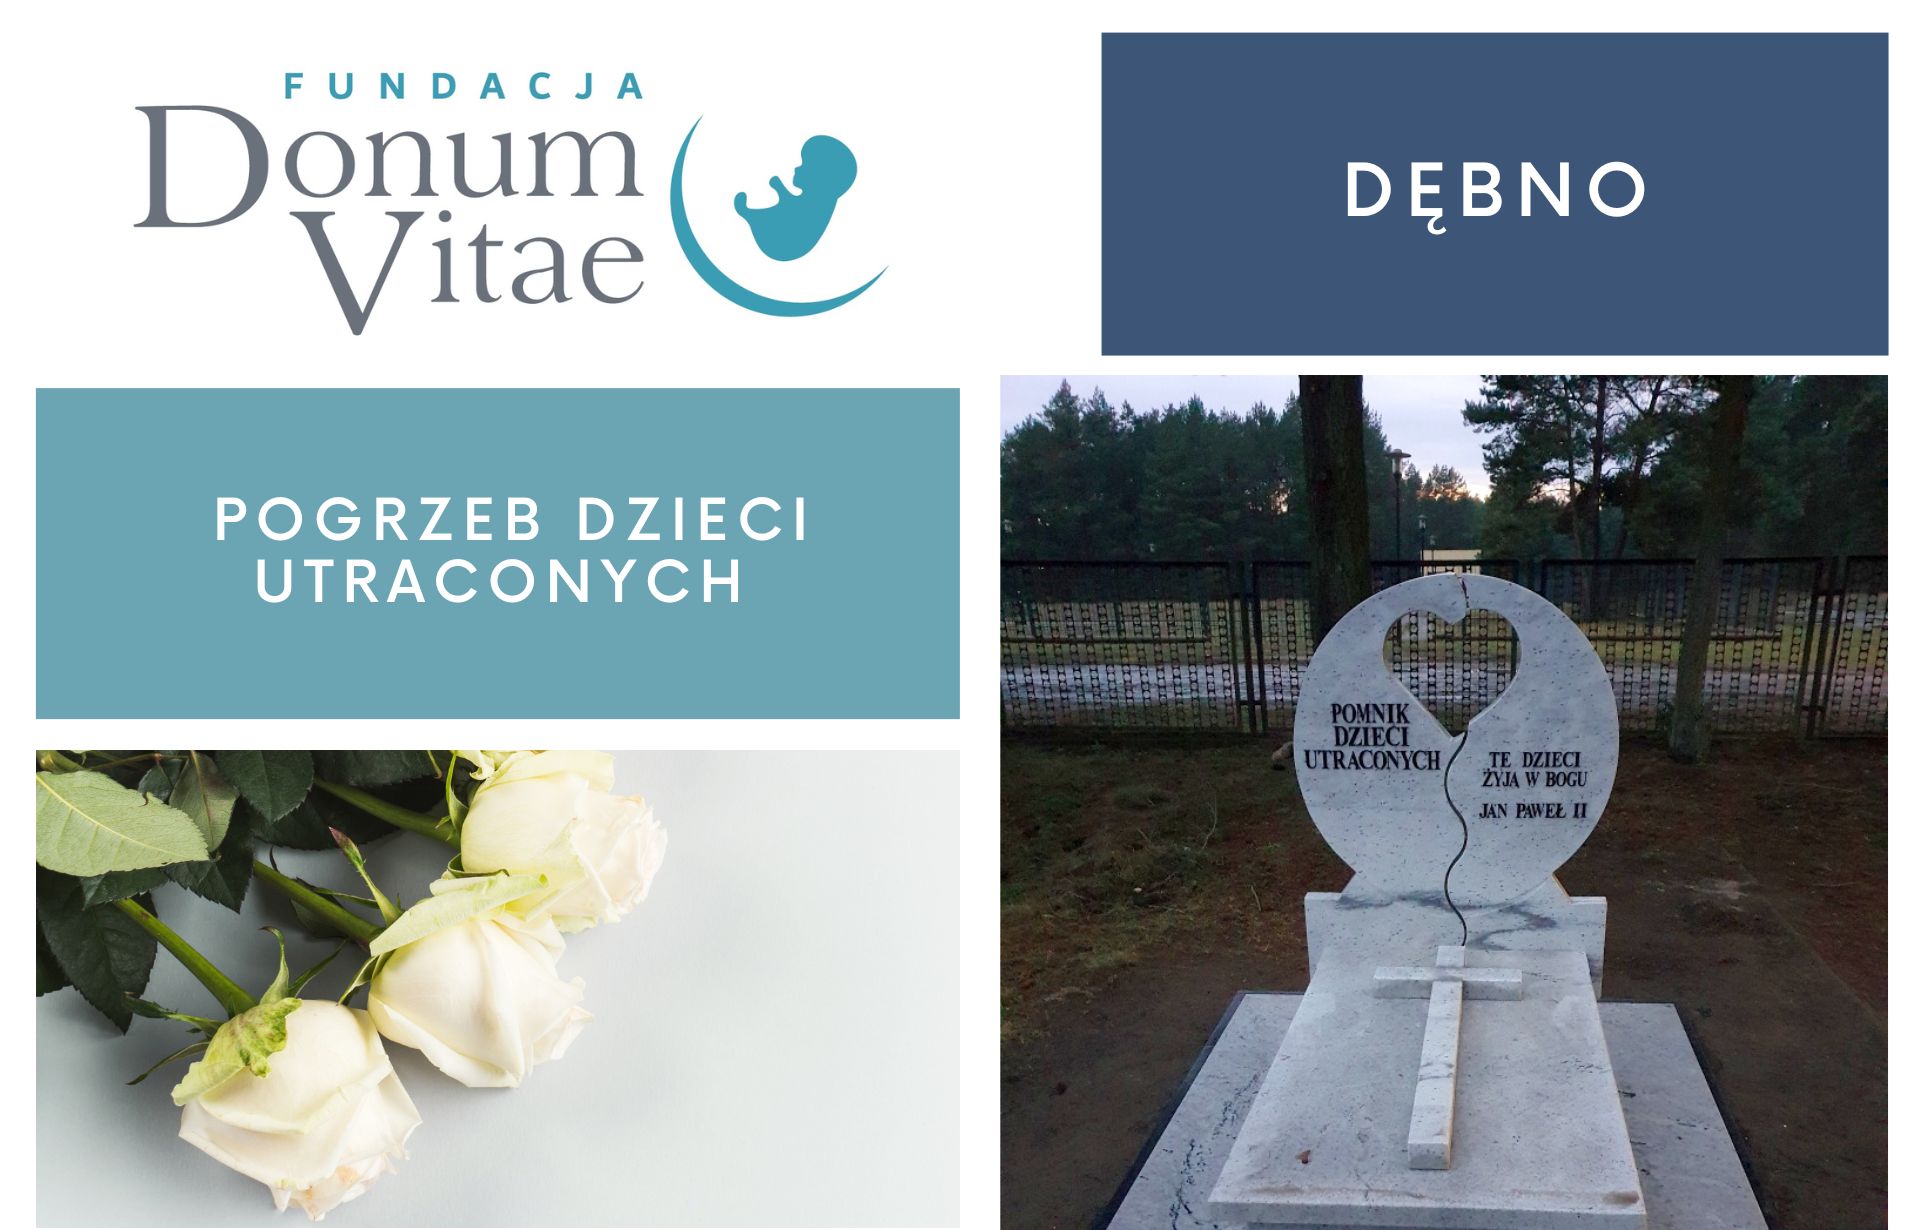 Pogrzeb Dzieci Utraconych w Dębnie i uroczystość poświęcenia pomnika.